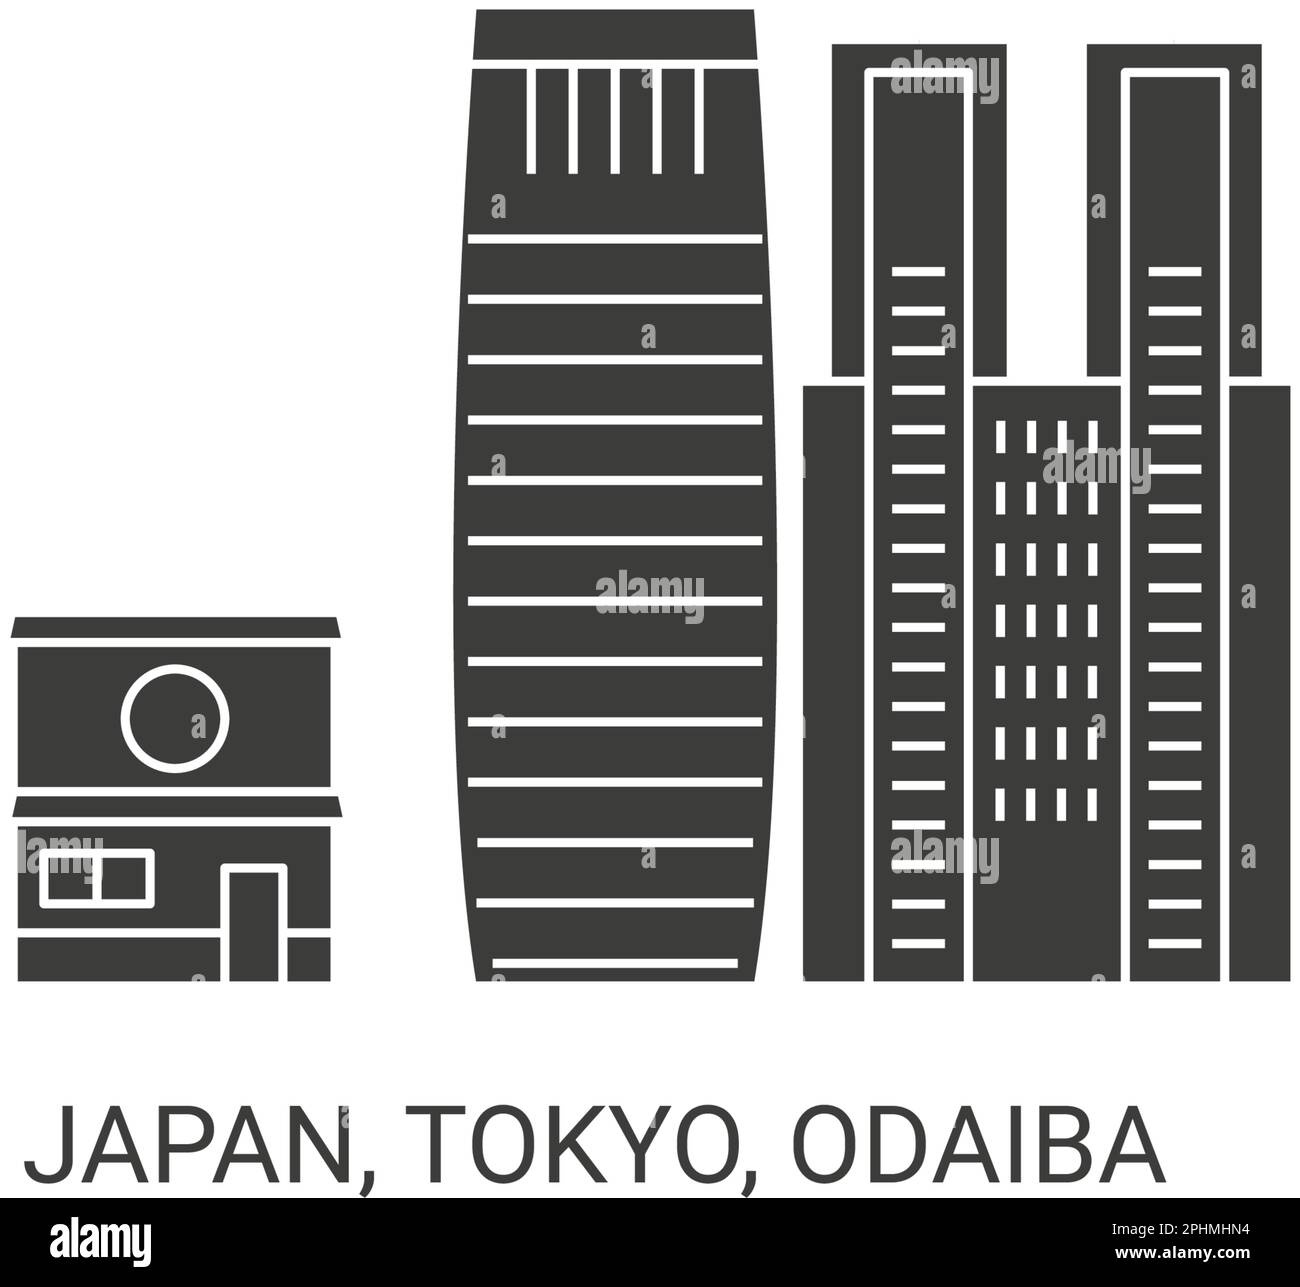 Japon, Tokyo, Odaiba, illustration vectorielle de voyage Illustration de Vecteur